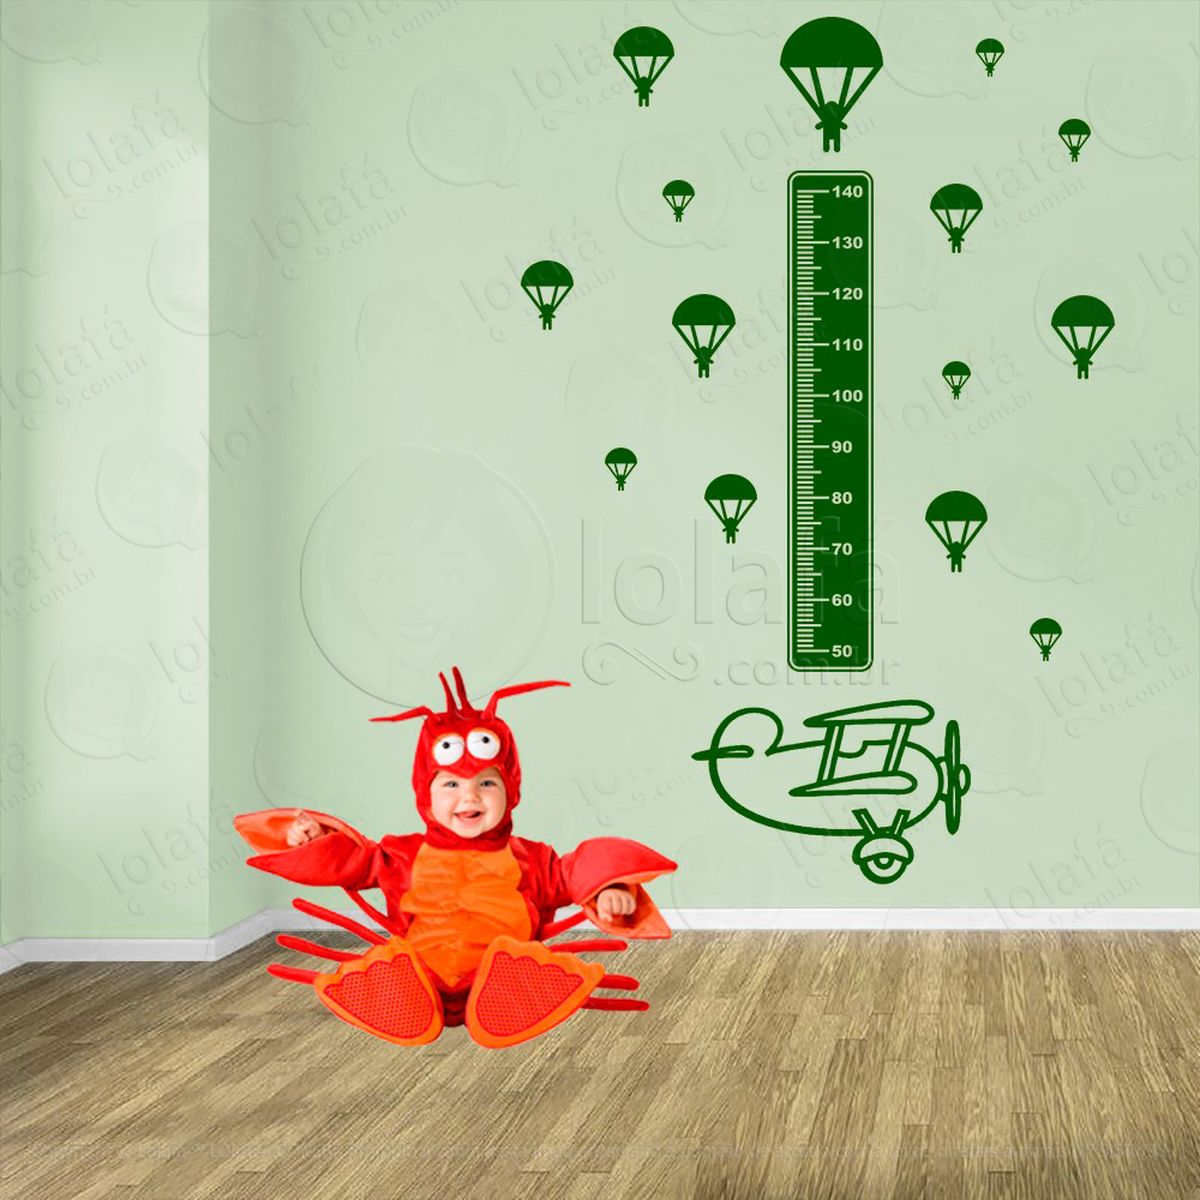 avião e paraquedas adesivo régua de crescimento infantil, medidor de altura para quarto, porta e parede - mod:1302